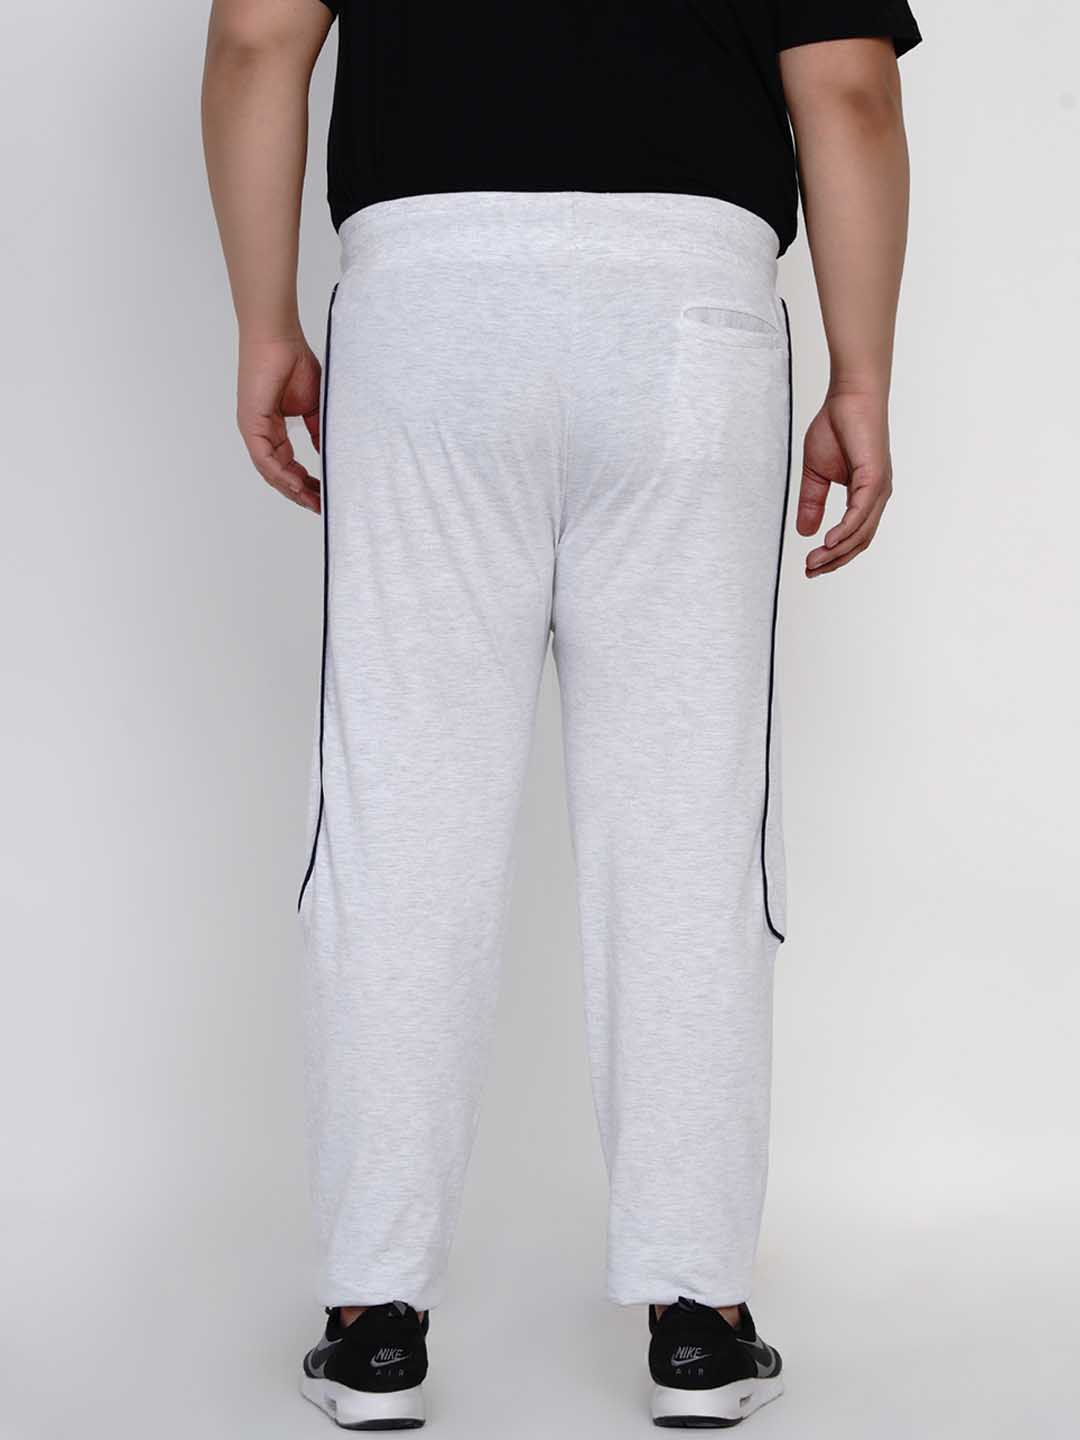 Jordan Brooklyn Fleece Women's Pants (Plus Size). Nike.com